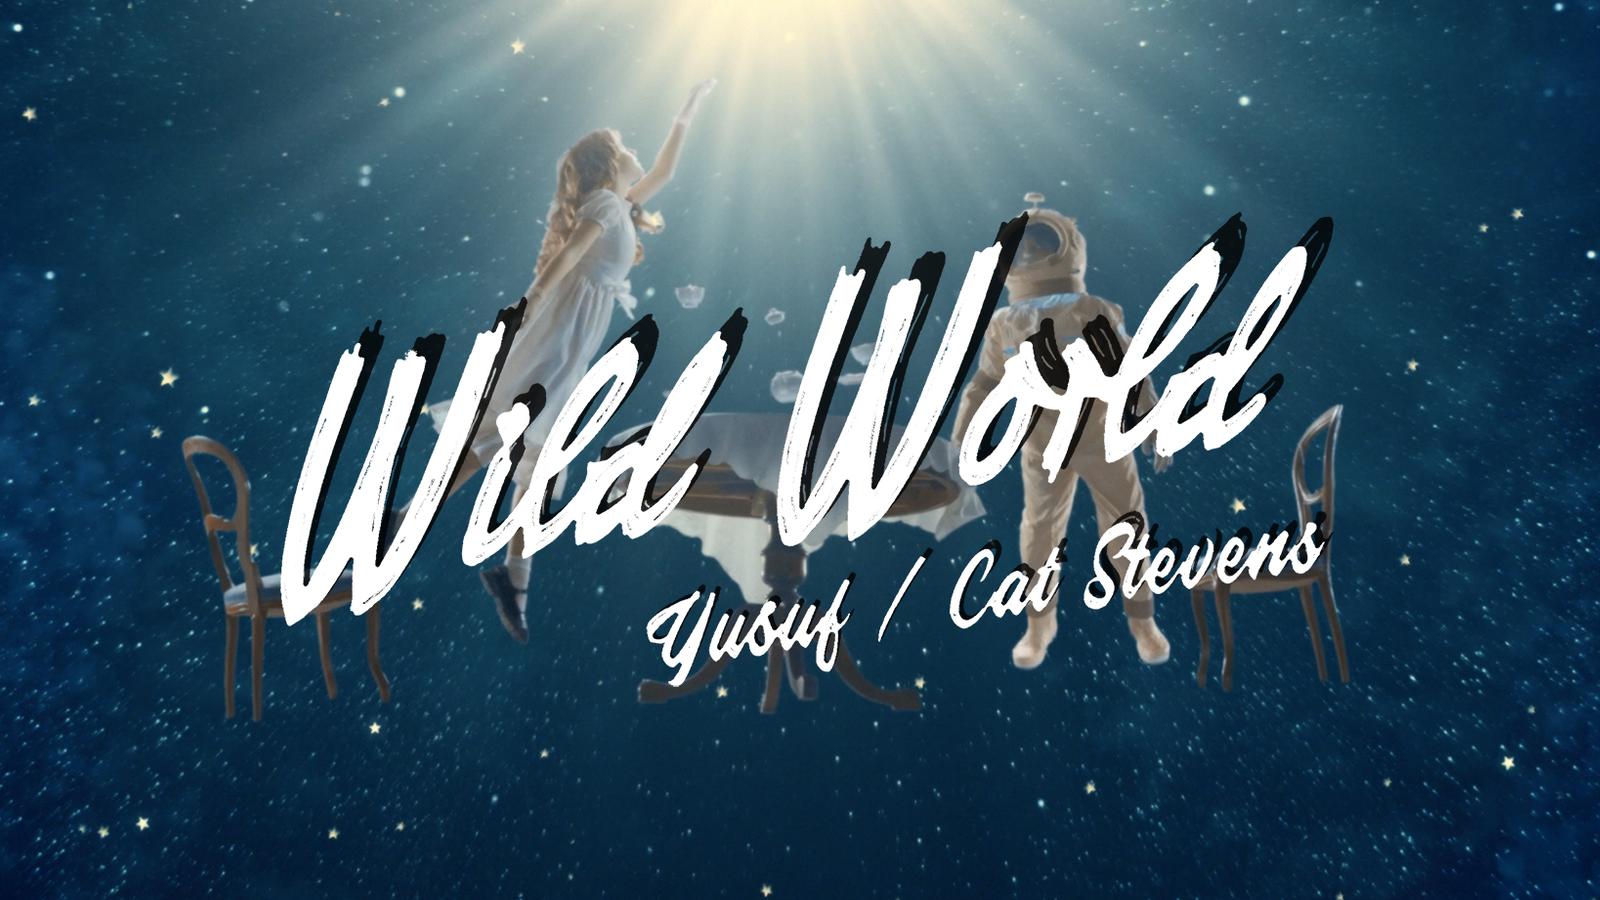 Yusuf / Cat Stevens – Wild World